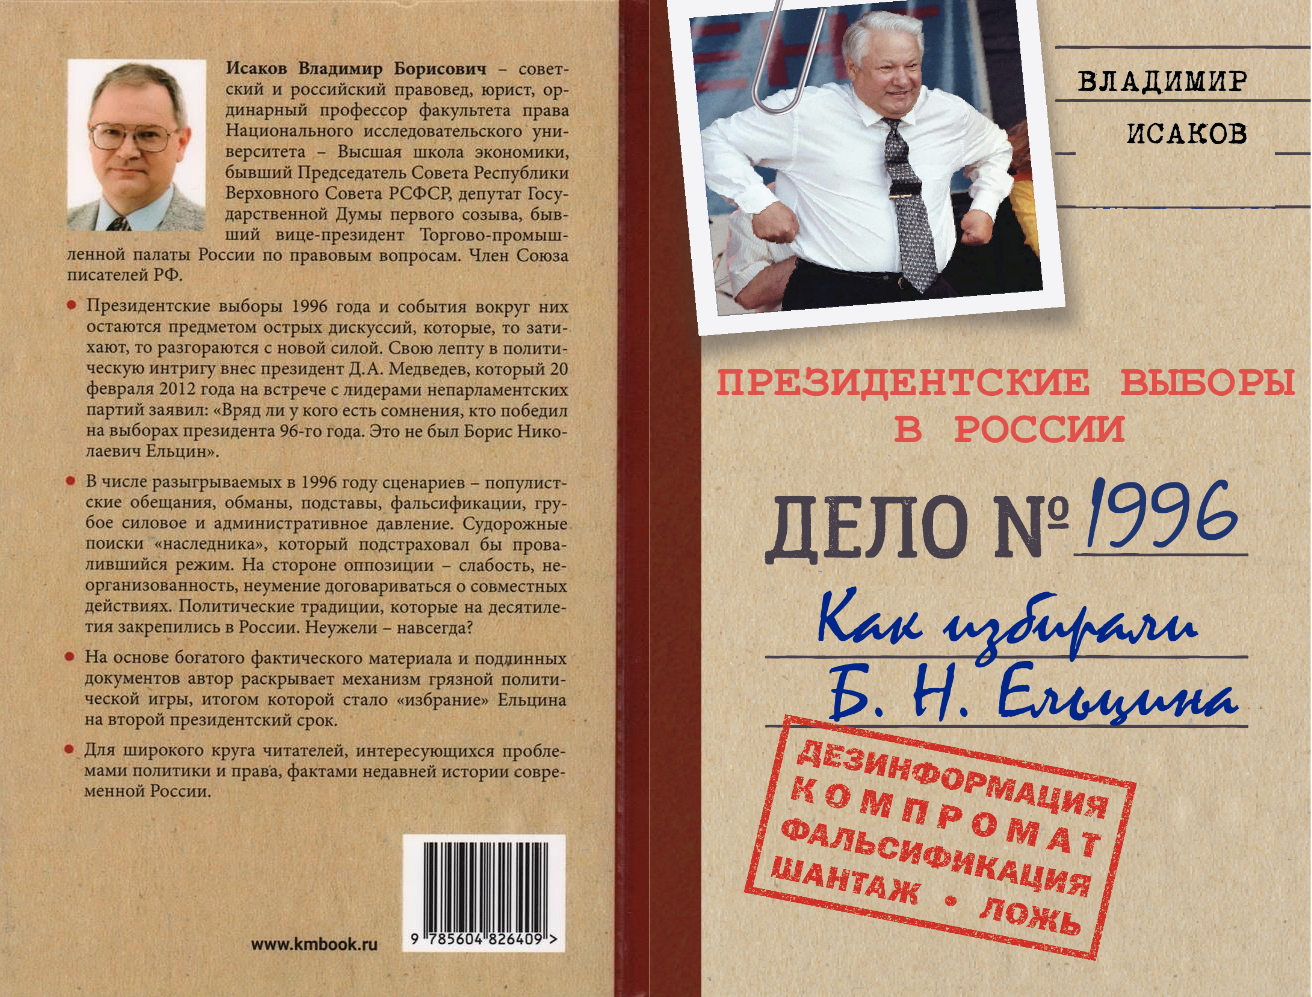 Президентские выборы в России: Как избирали Б.Н. Ельцина